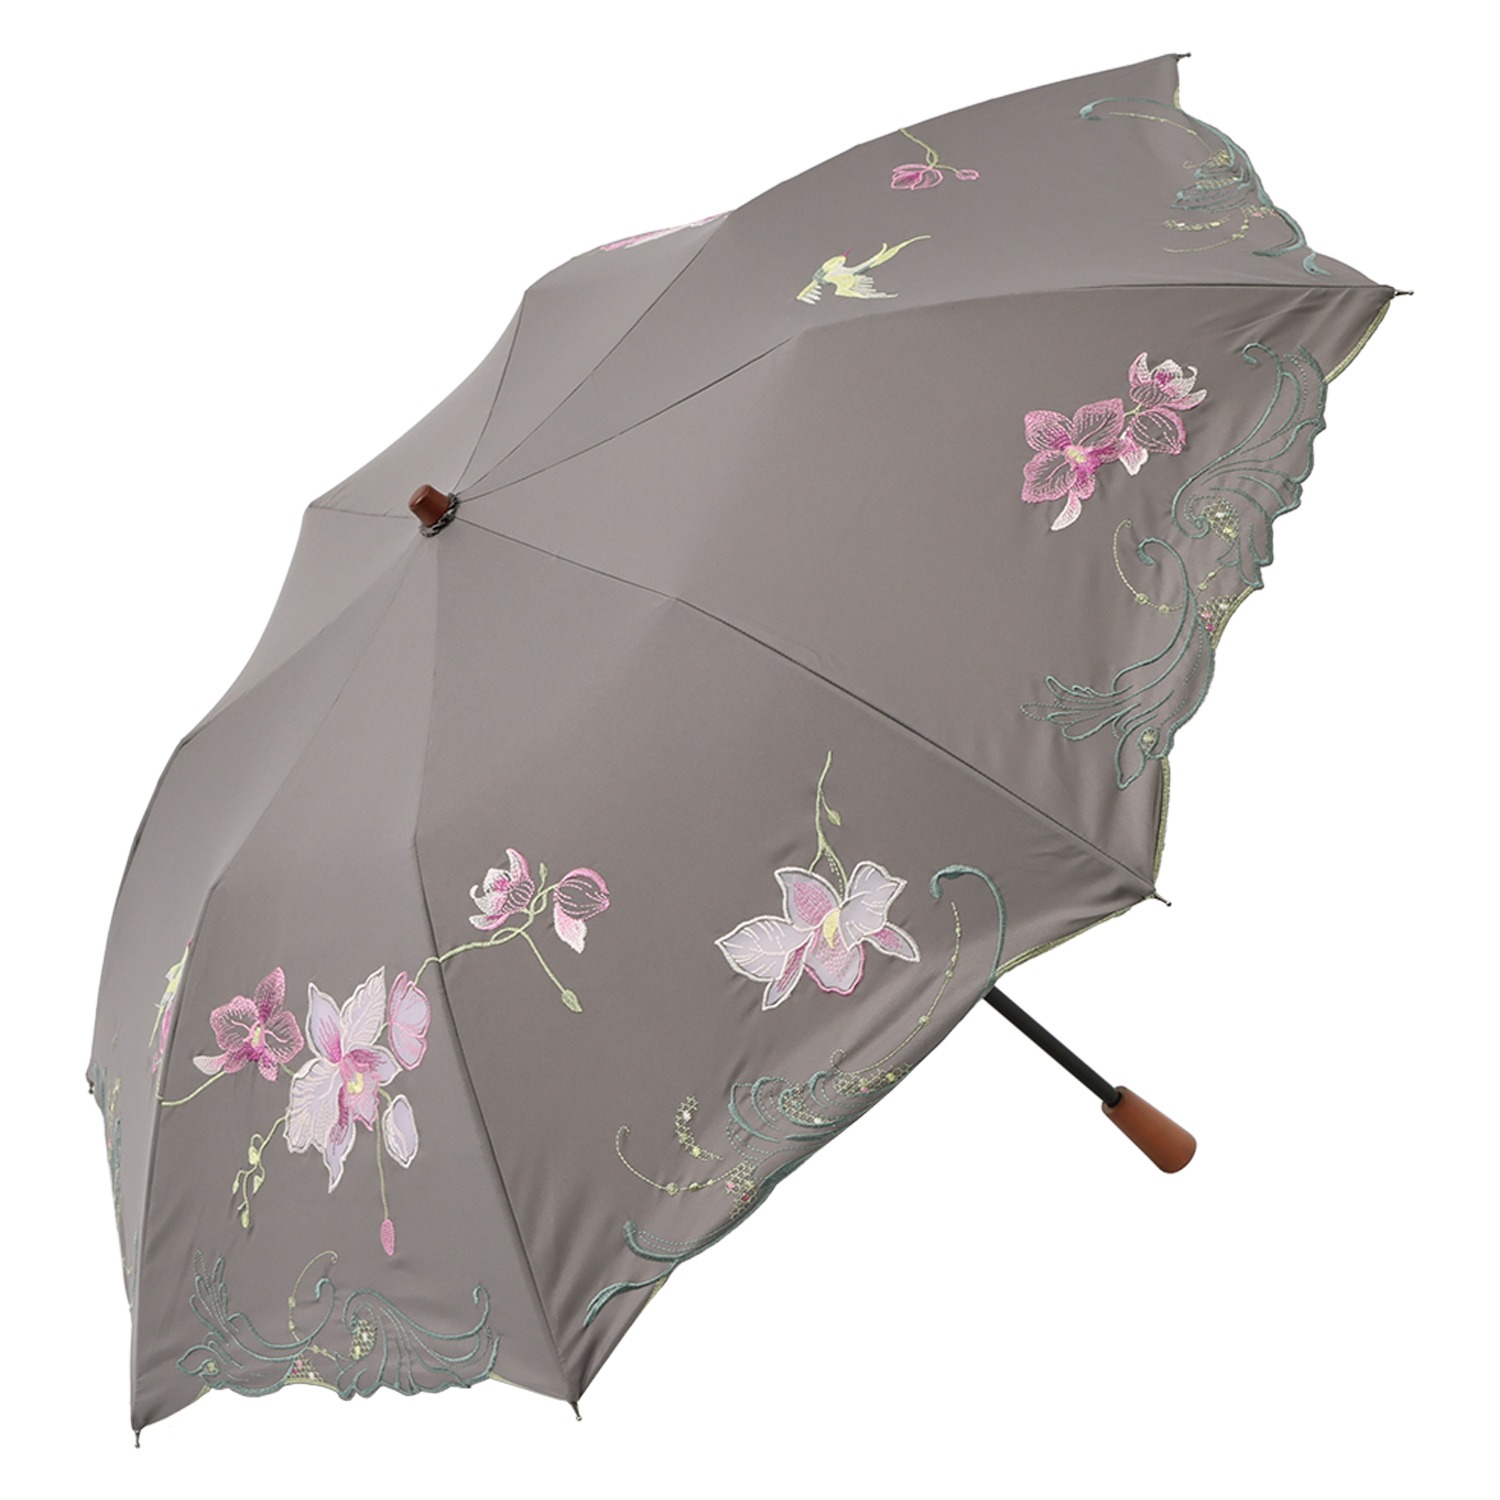 シノワズリーモダン 女優日傘プレミアム 蘭花刺しゅう かわず張り ショート折りたたみ日傘